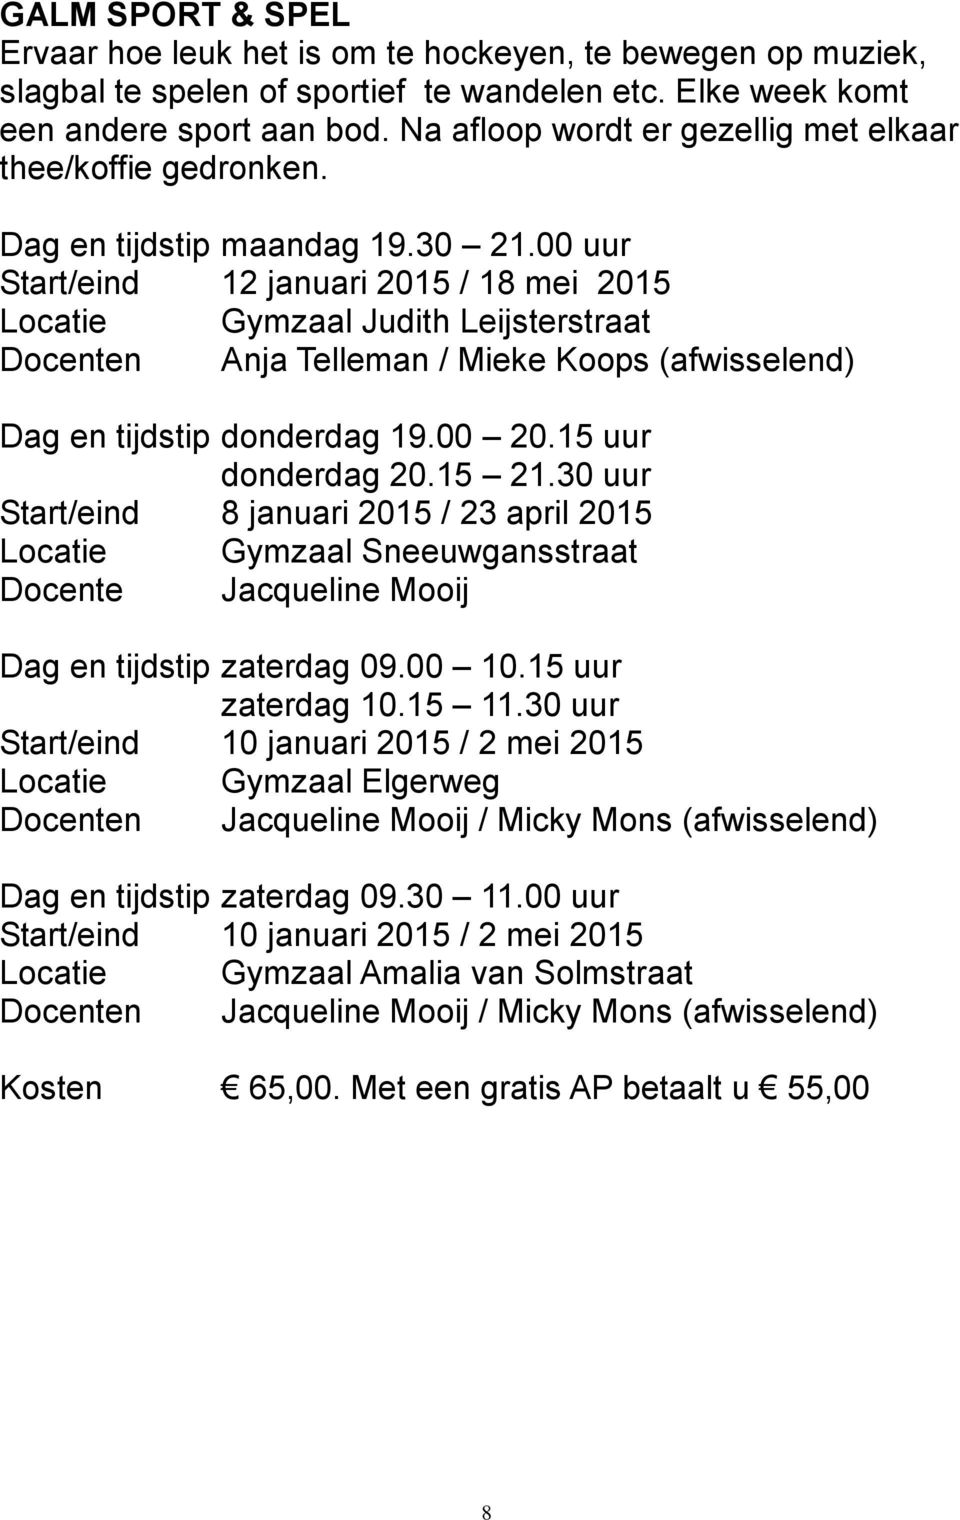 00 uur Start/eind 12 januari 2015 / 18 mei 2015 Locatie Gymzaal Judith Leijsterstraat Docenten Anja Telleman / Mieke Koops (afwisselend) Dag en tijdstip donderdag 19.00 20.15 uur donderdag 20.15 21.